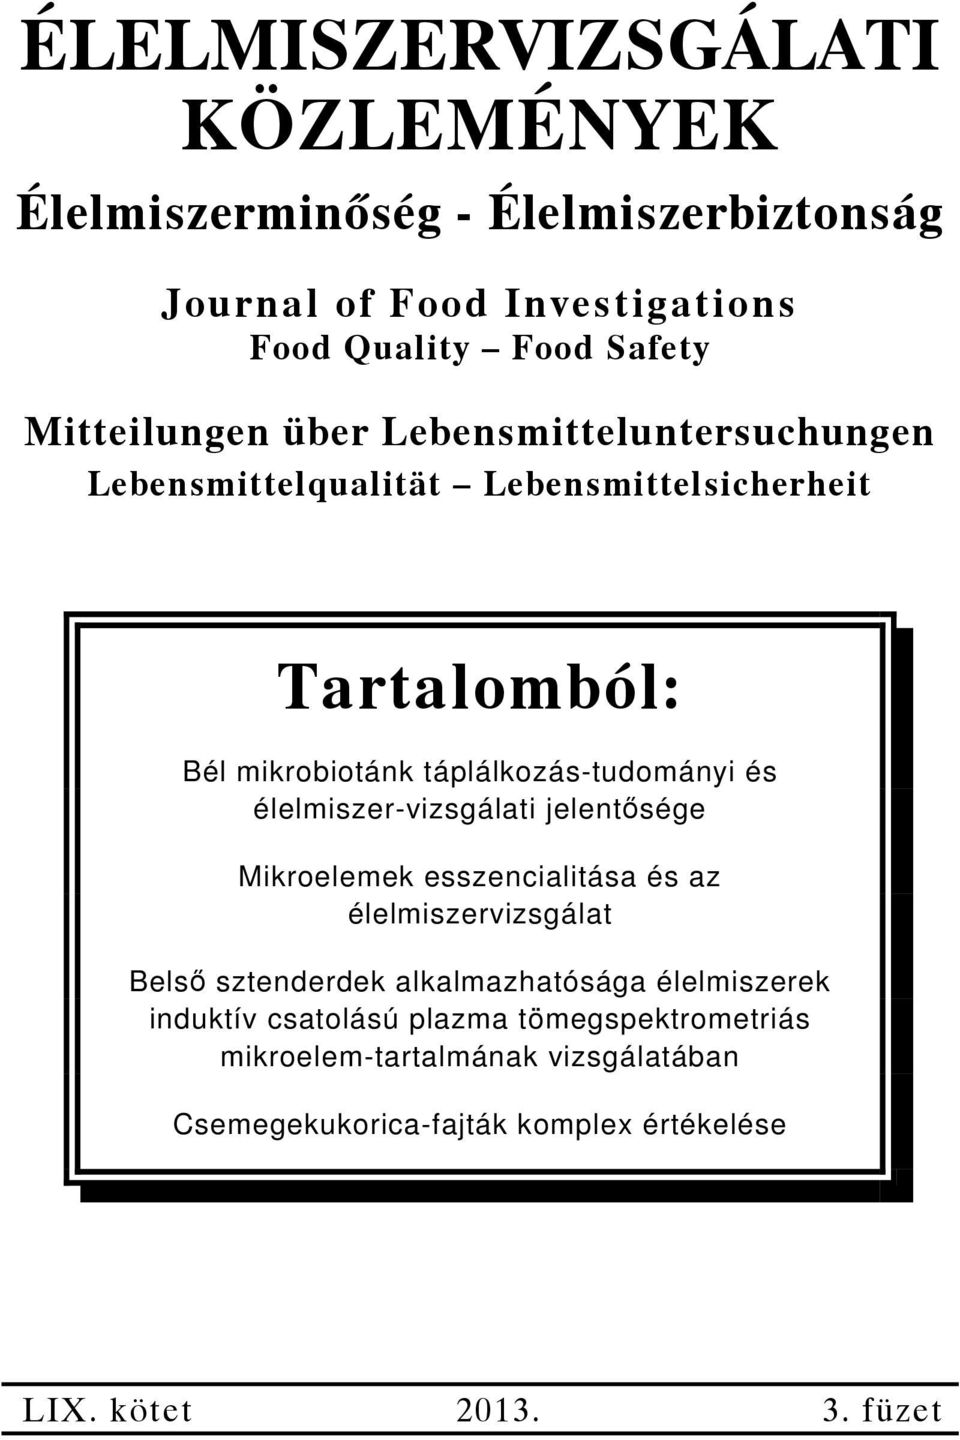 táplálkozás-tudományi és élelmiszer-vizsgálati jelentősége Mikroelemek esszencialitása és az élelmiszervizsgálat Belső sztenderdek